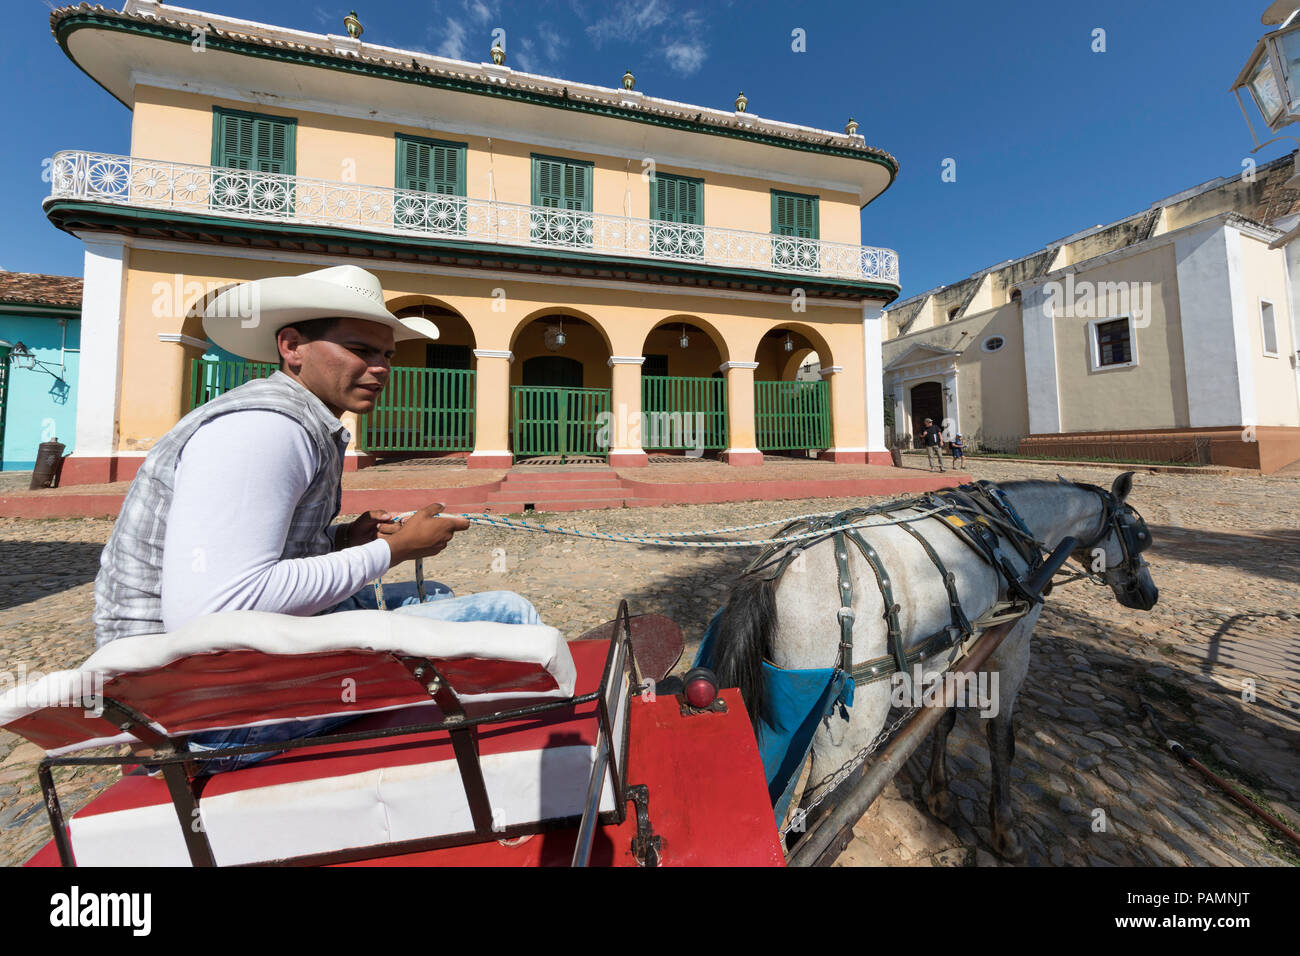 Una carrozza trainata da cavalli noto localmente come un coche in Plaza Mayor, nel Patrimonio Mondiale dell Unesco città di Trinidad, Cuba. Foto Stock